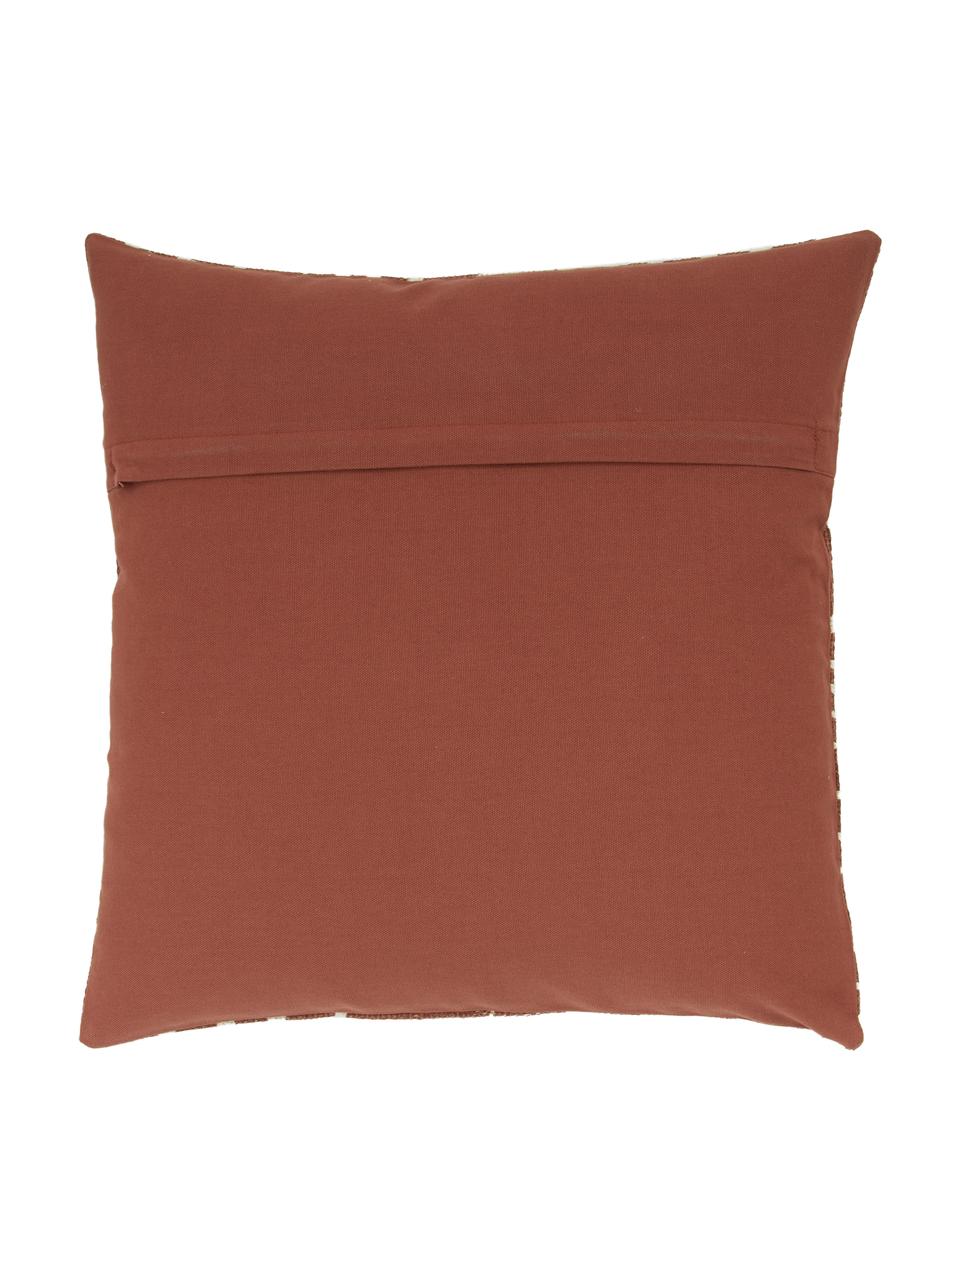 Poszewka na poduszkę Nomad, 100% bawełna, Rdzawy, kremowobiały, S 45 x D 45 cm